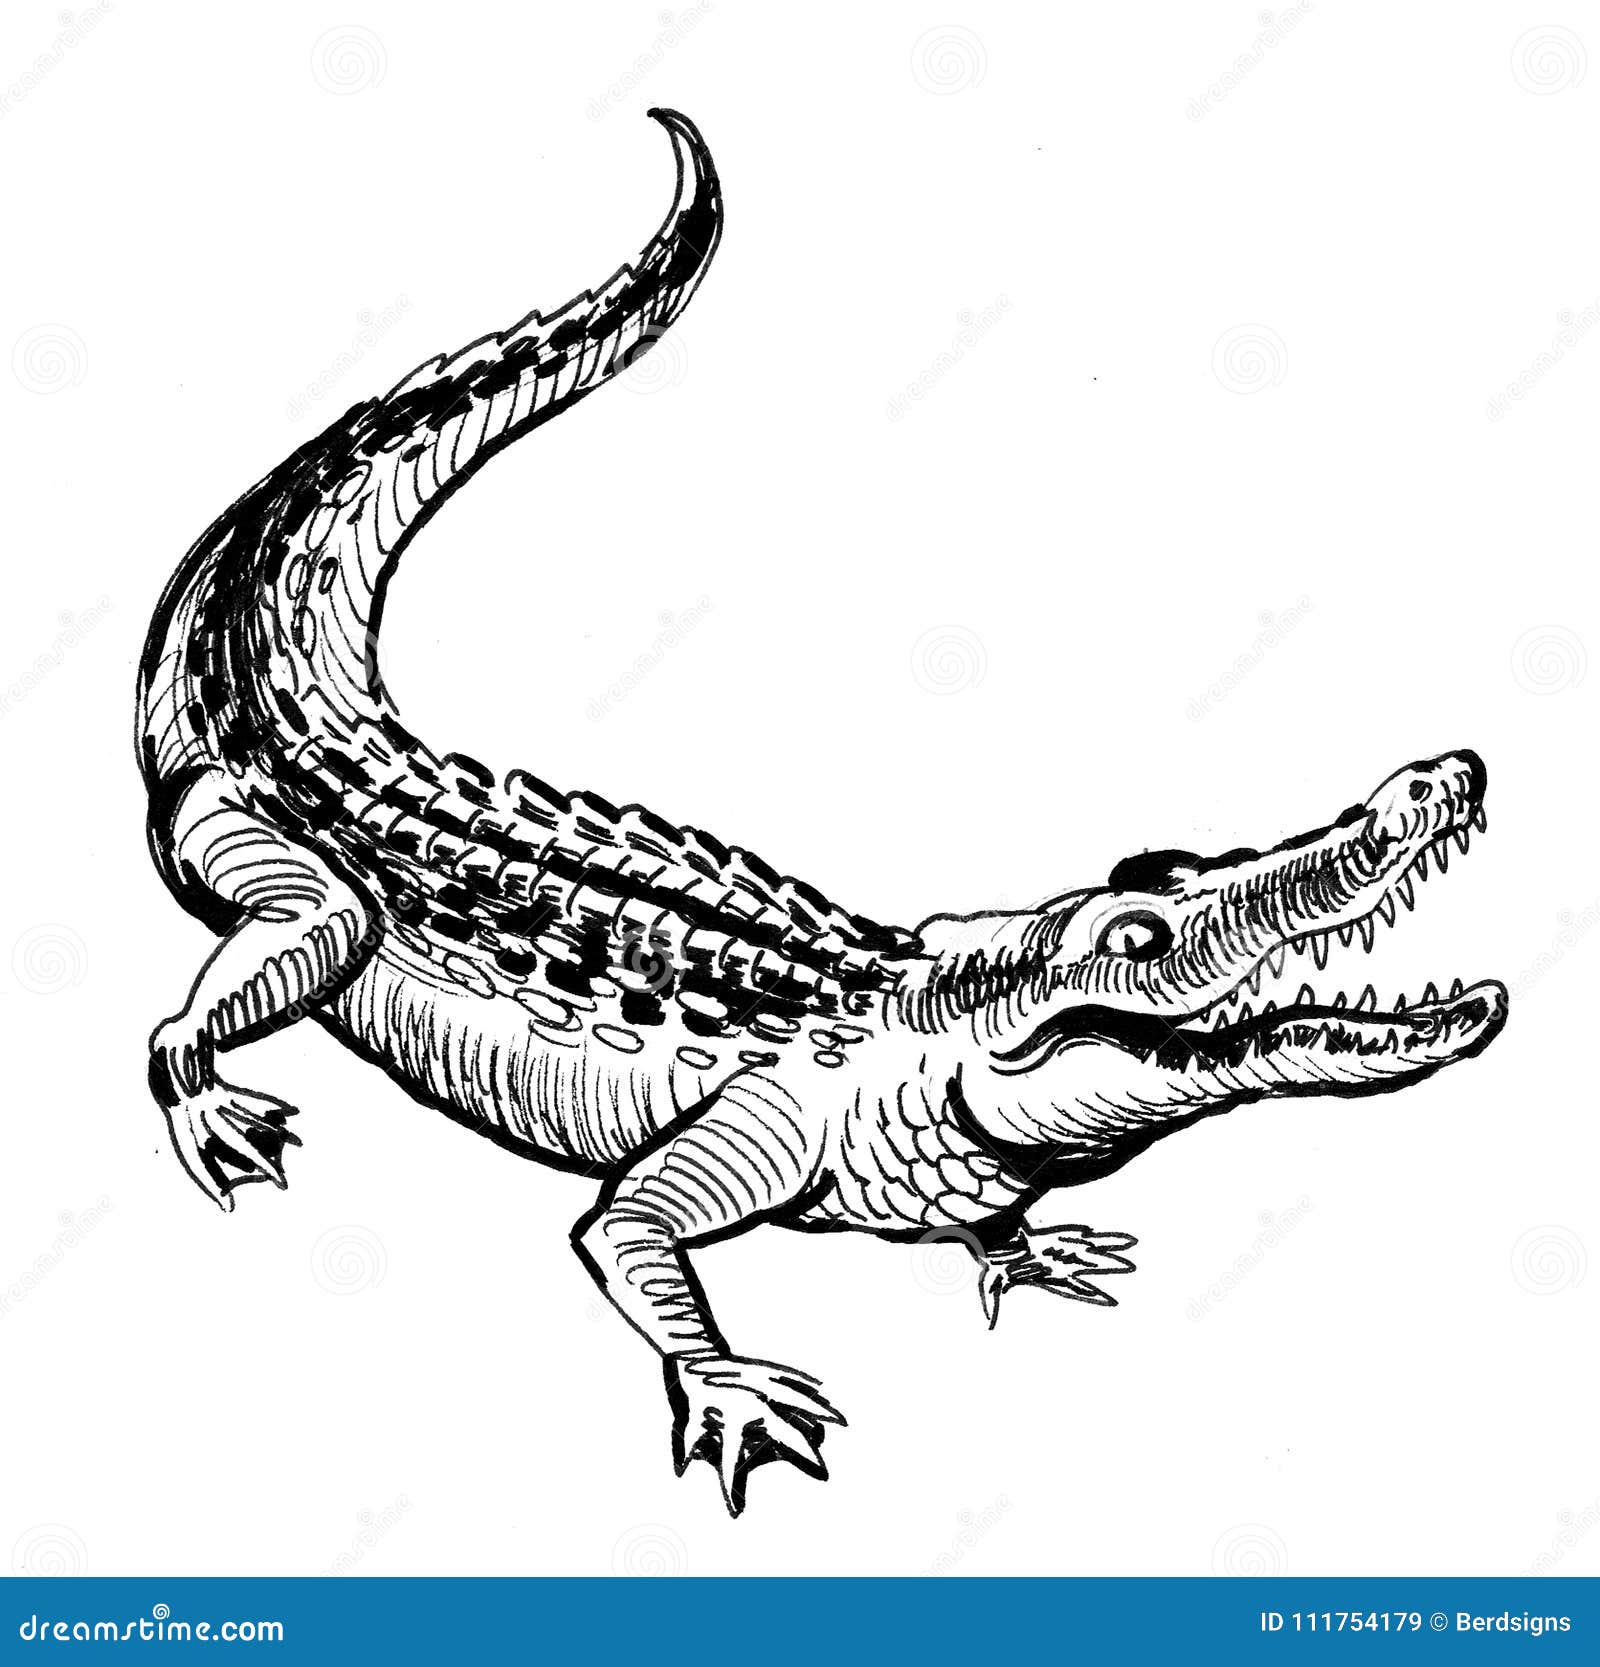 6,102 Alligator Sketch Images, Stock Photos & Vectors | Shutterstock